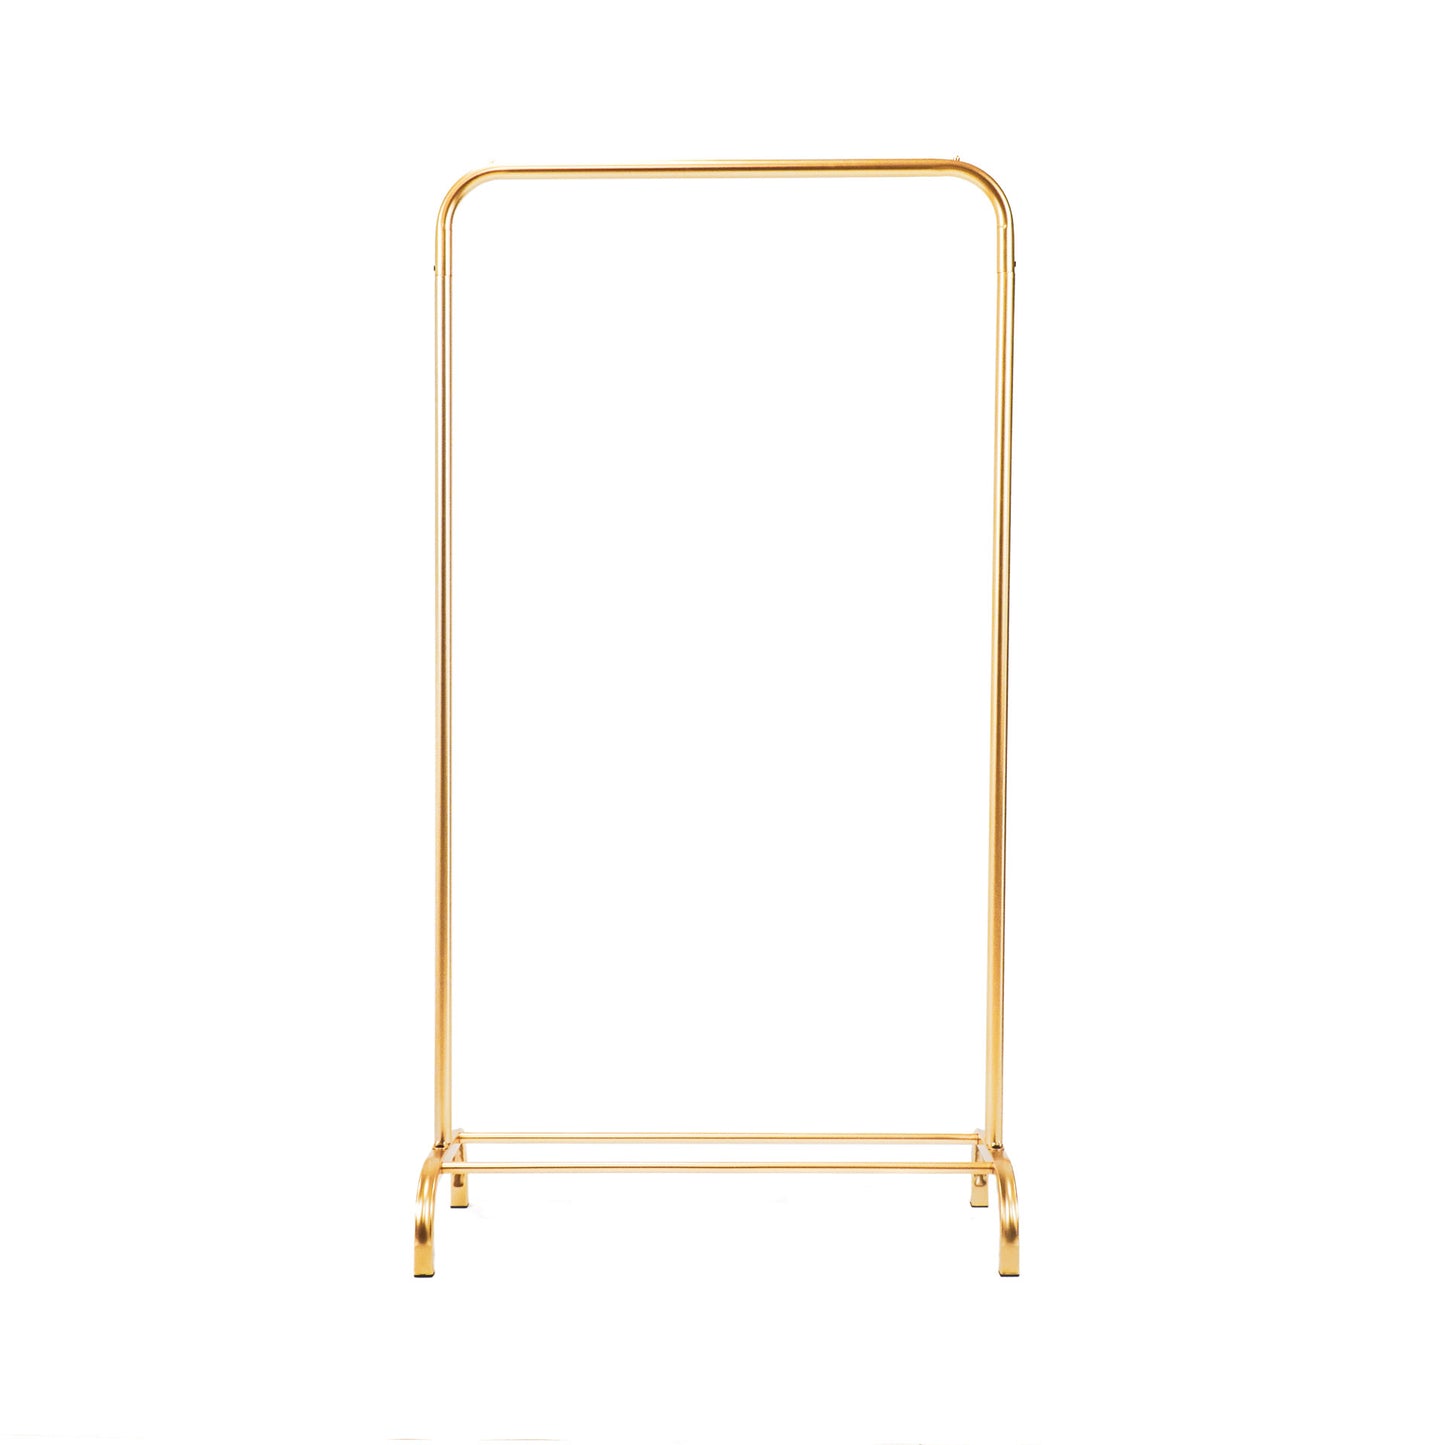 HV Cloth Rack Metal - Gold - 80x40x150cm